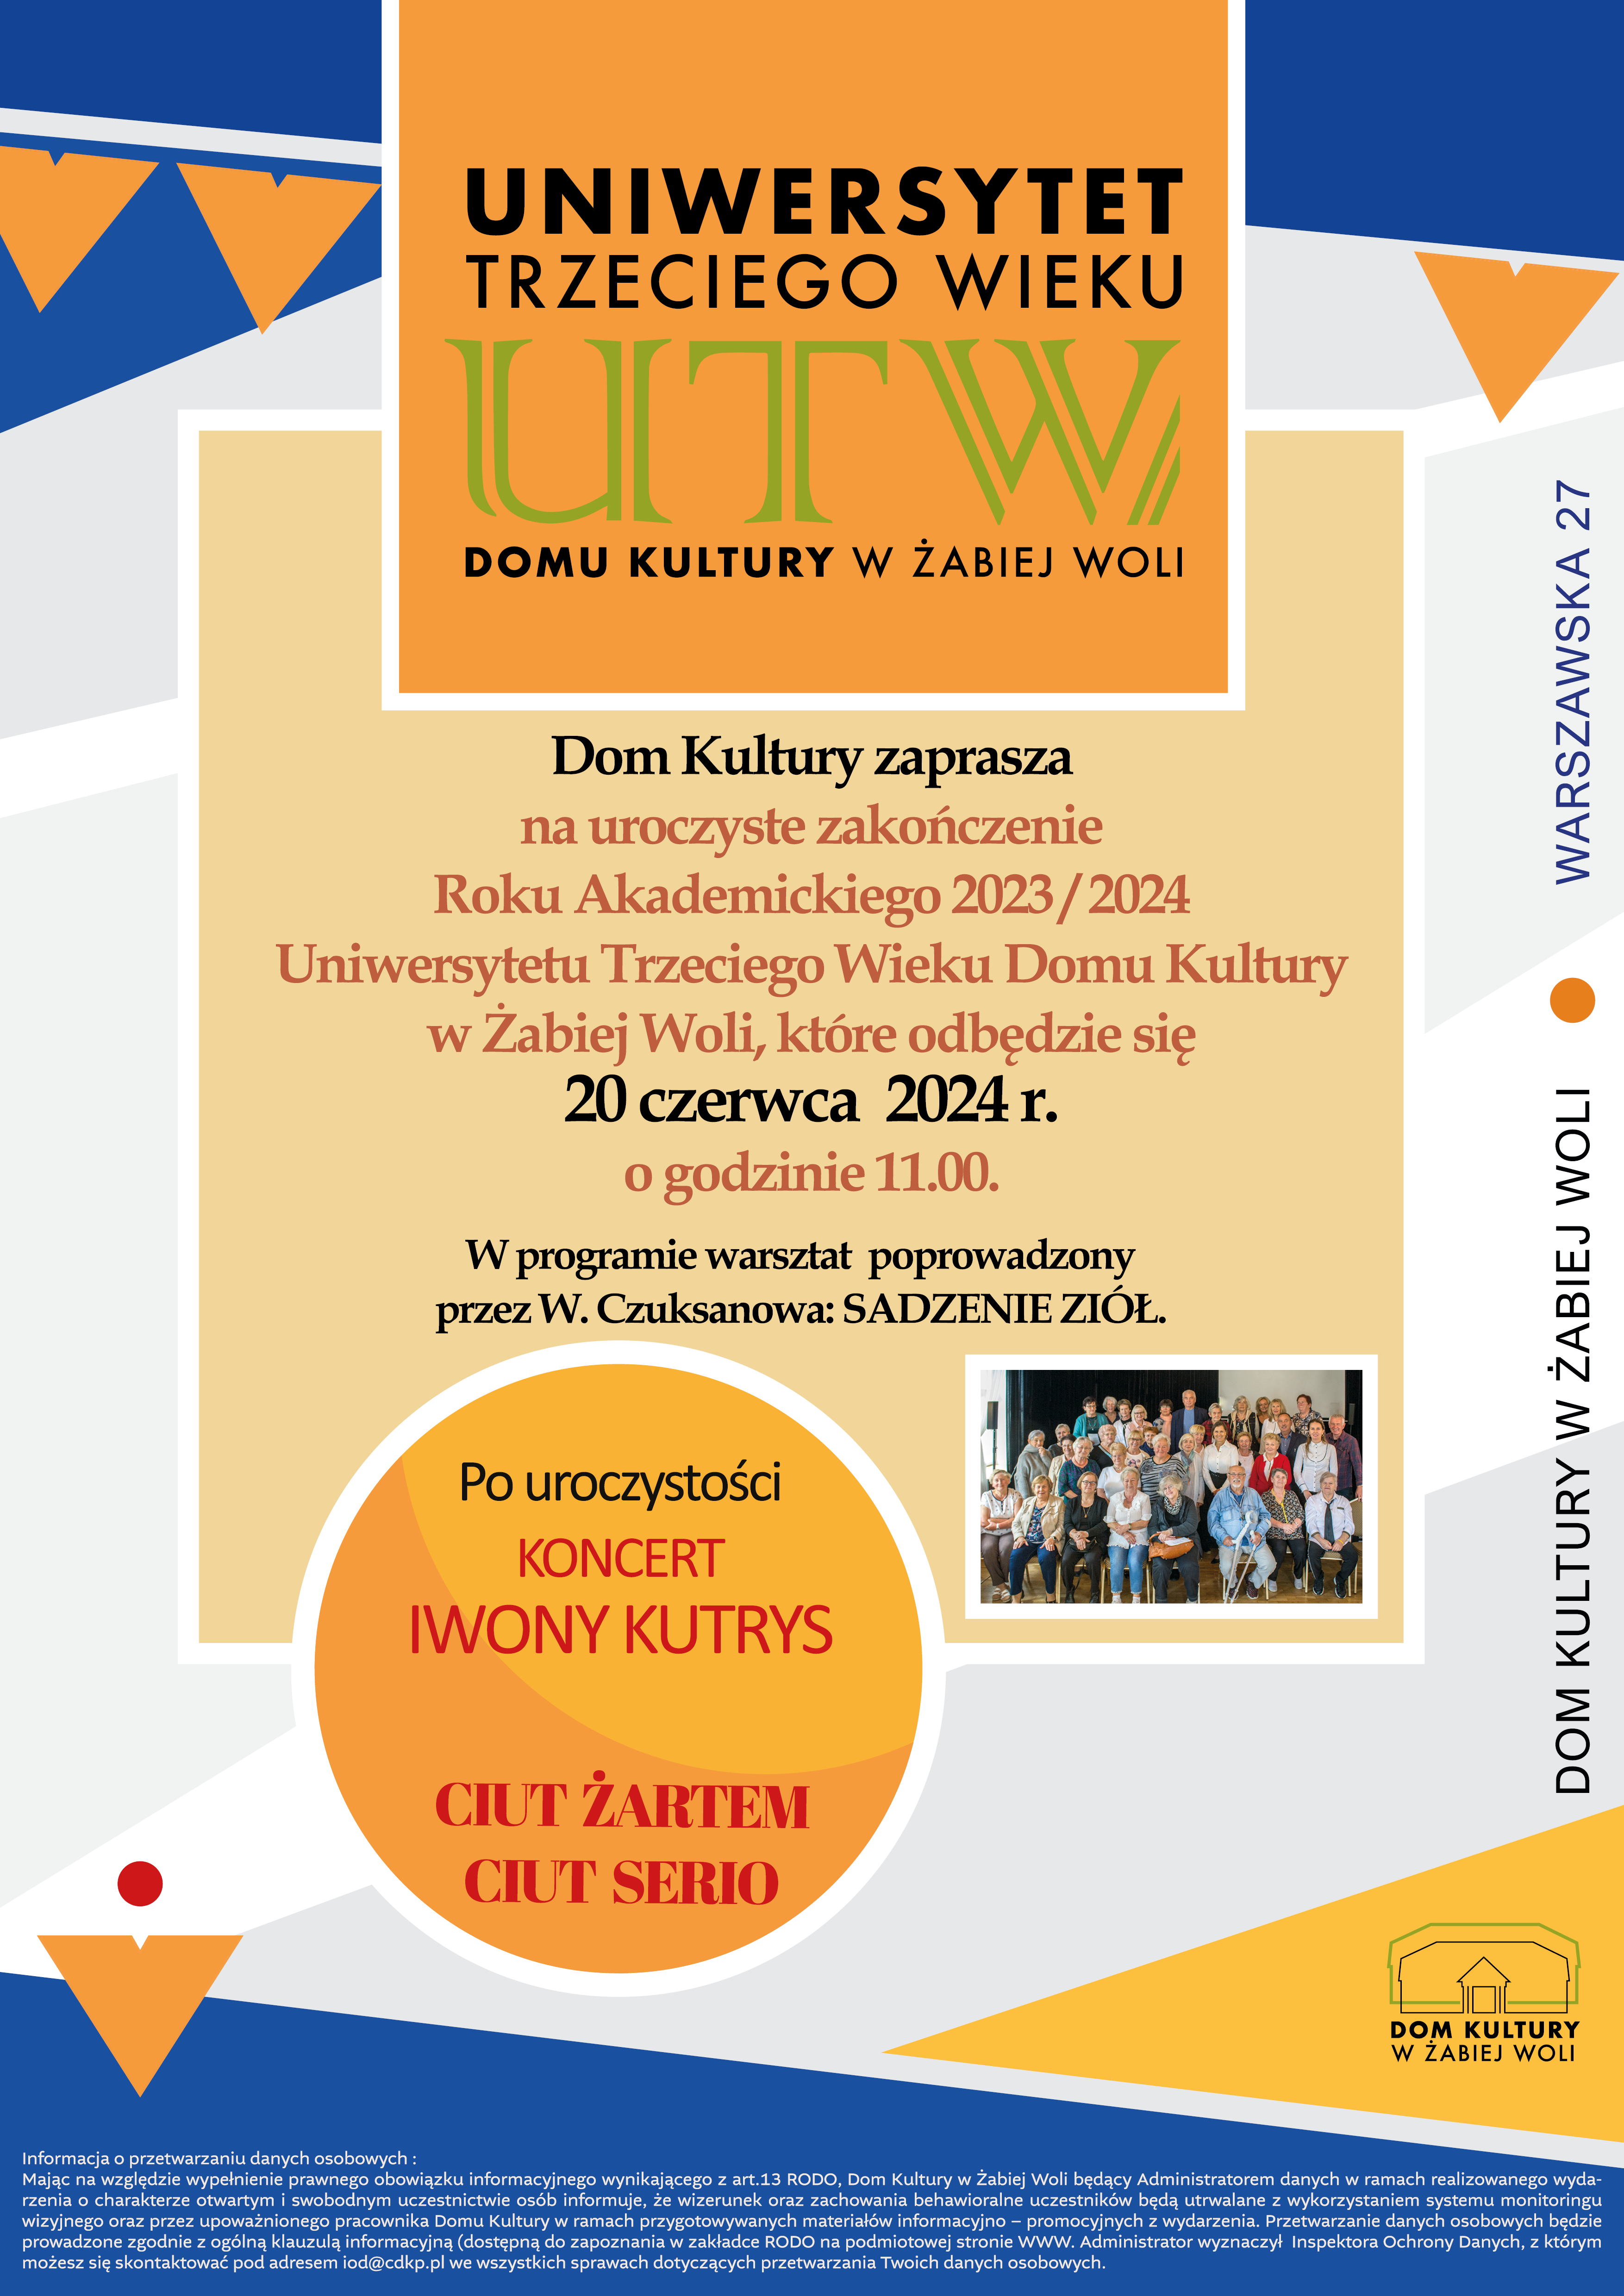 UTW - zakończenie roku akademickiego 2023/2024